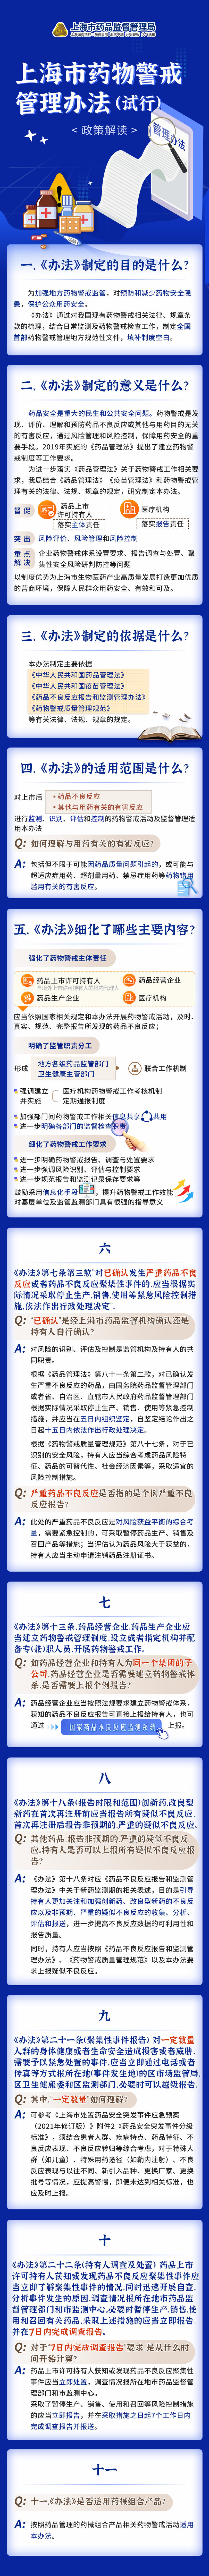 《上海市药物警戒管理办法（试行）》政策图解.png